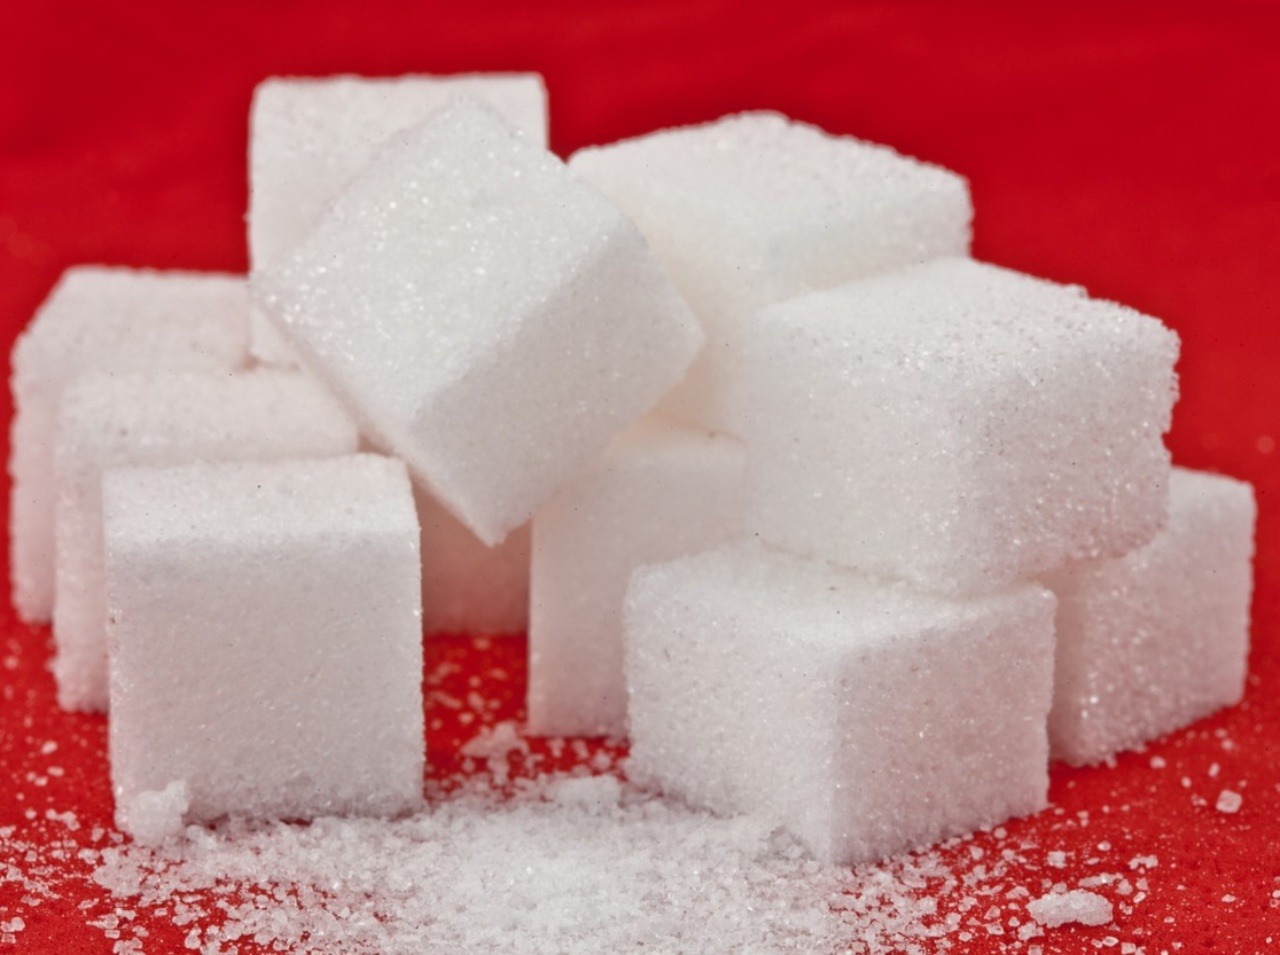 Cukor v nadmernom množstve je pre ľudský organizmus nebezpečný!